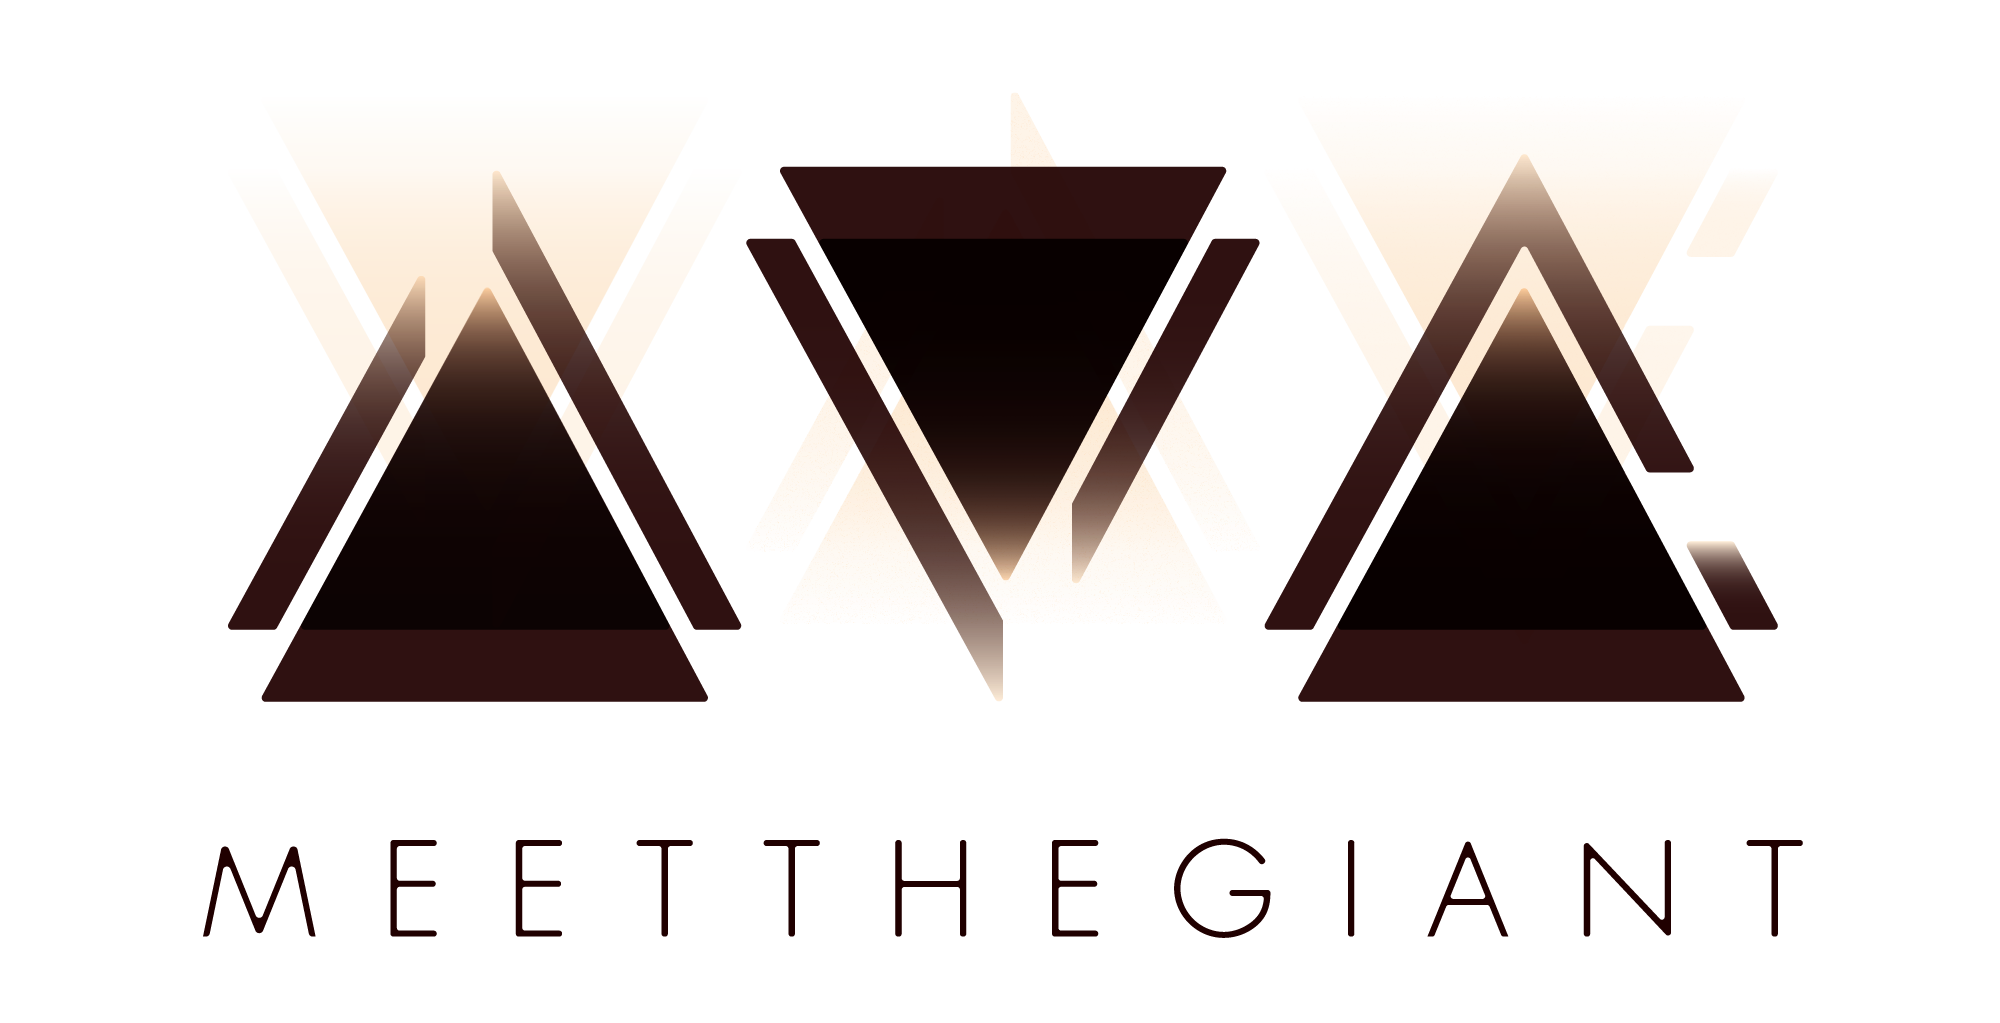 MeetTheGiant